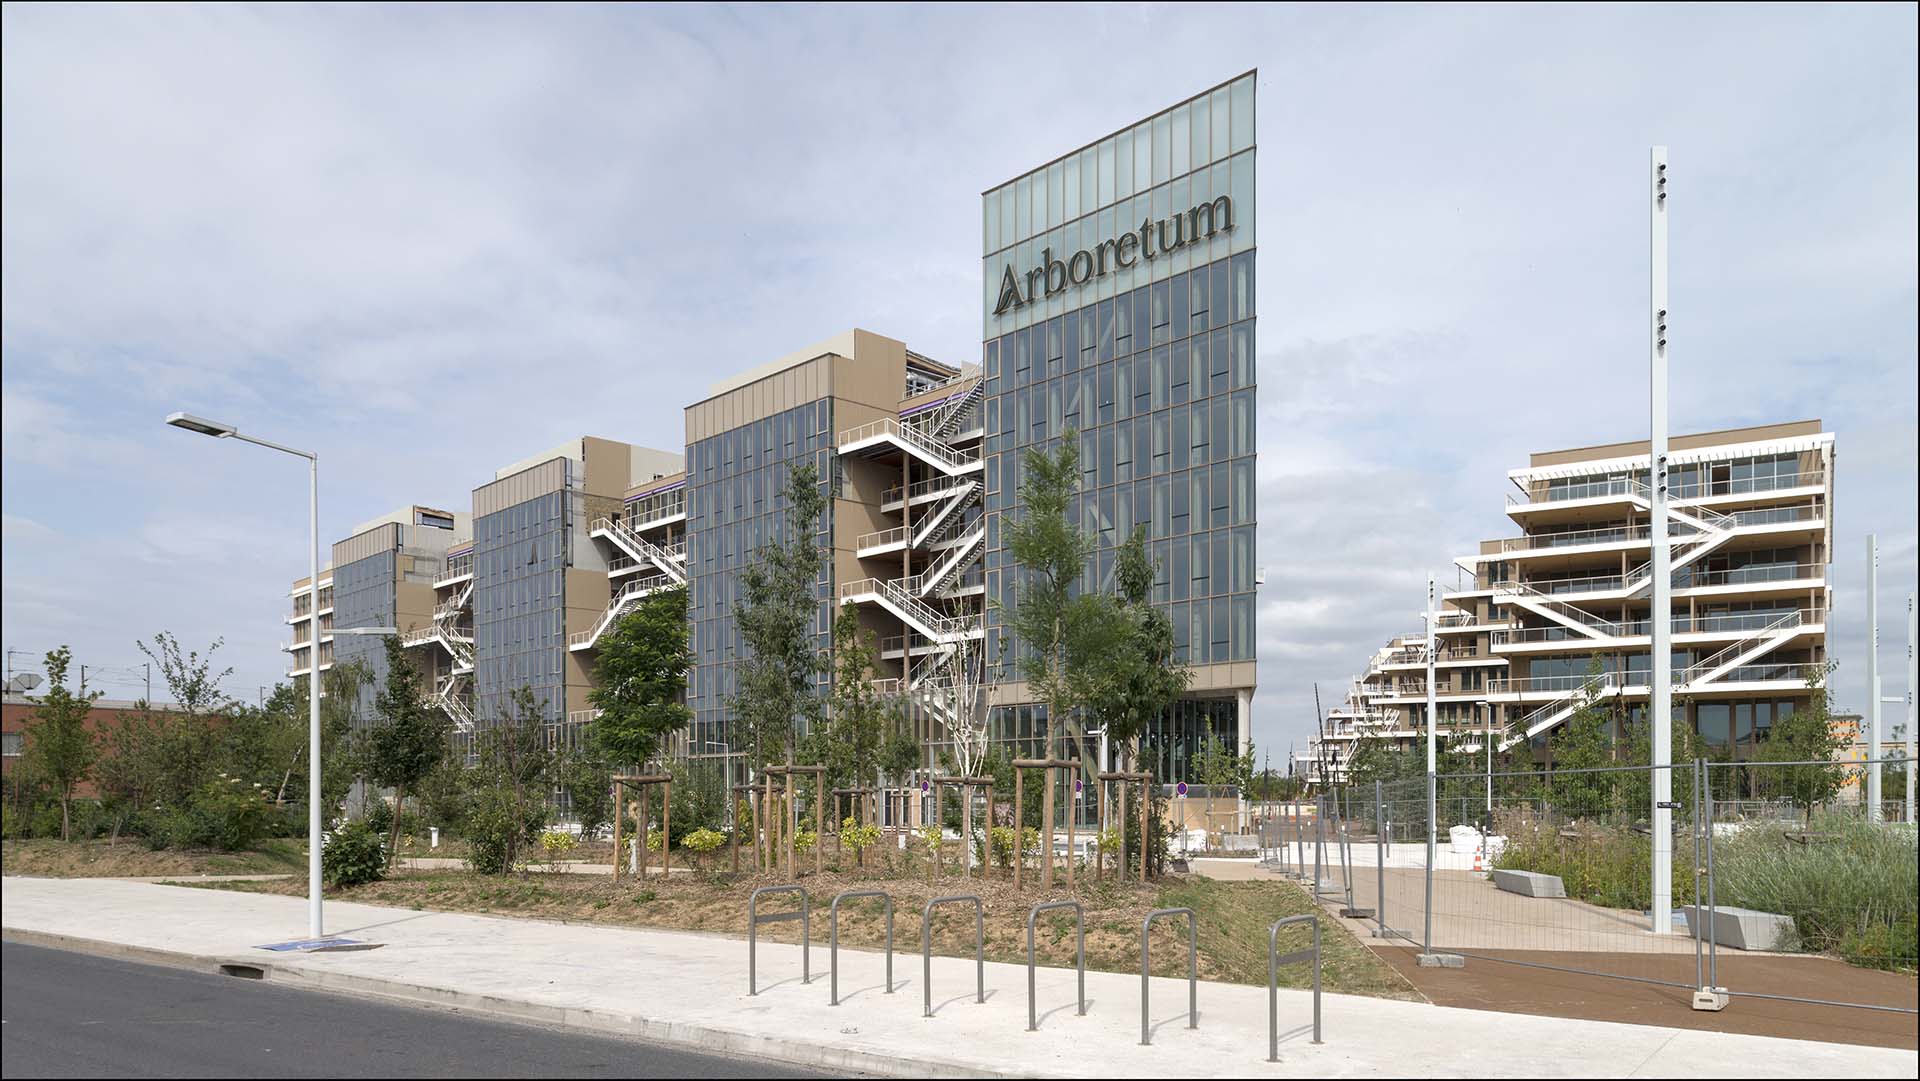 Arboretum è un complesso di edifici adebiti ad ufficio realizzato a Parigi e caratterizzato da facciate a vetrate per garantire luce naturale, ma anche un ottimo isolamento termico